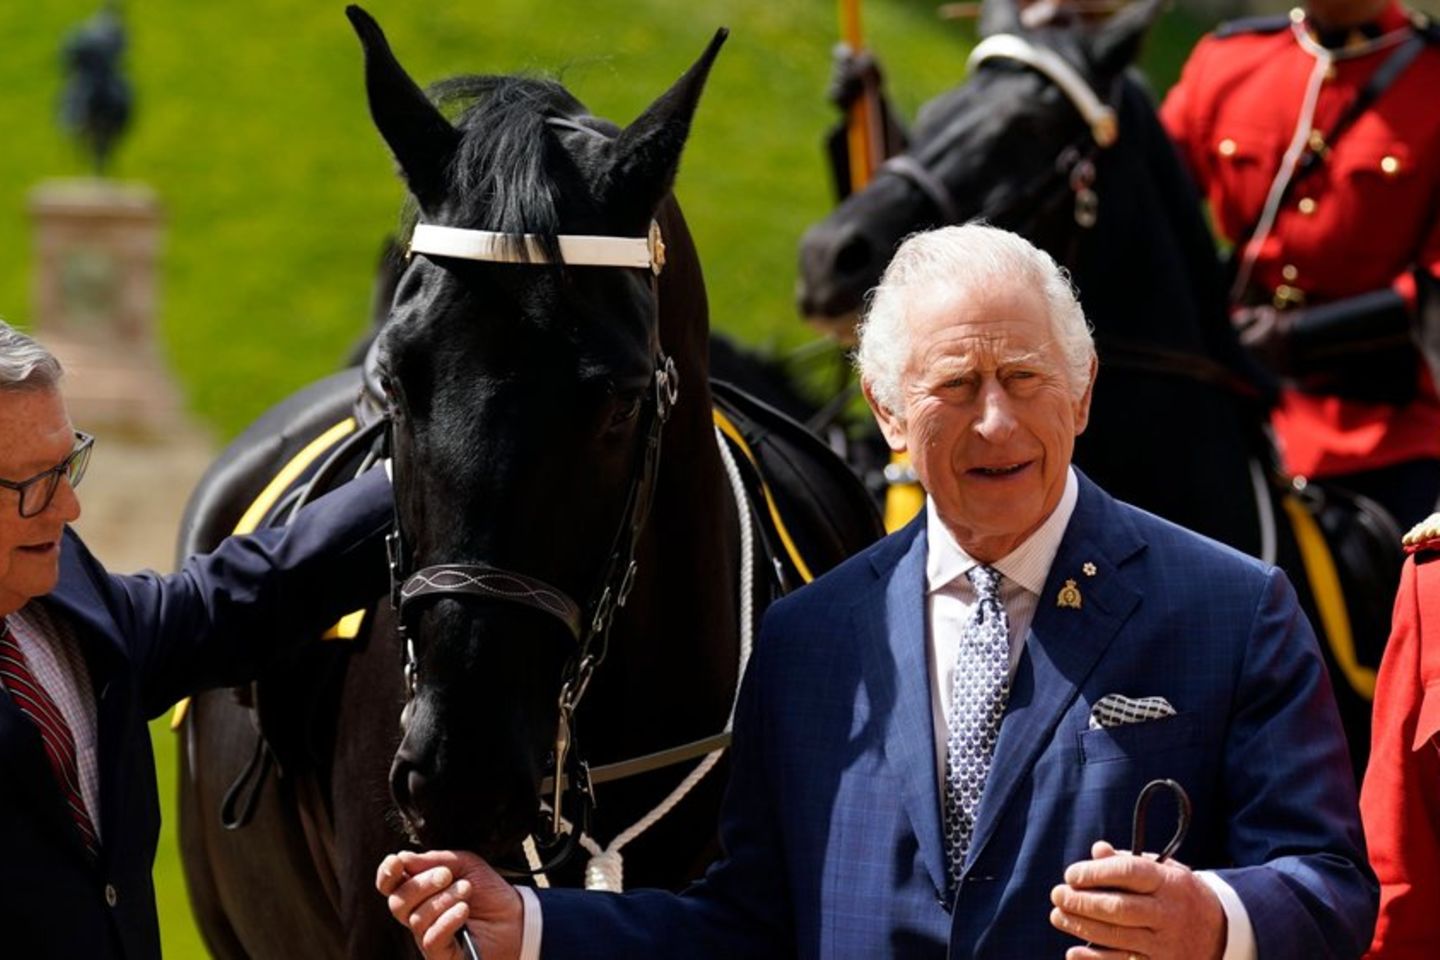 Kein Fan von Pferderennen: Besucht König Charles Ascot trotzdem?